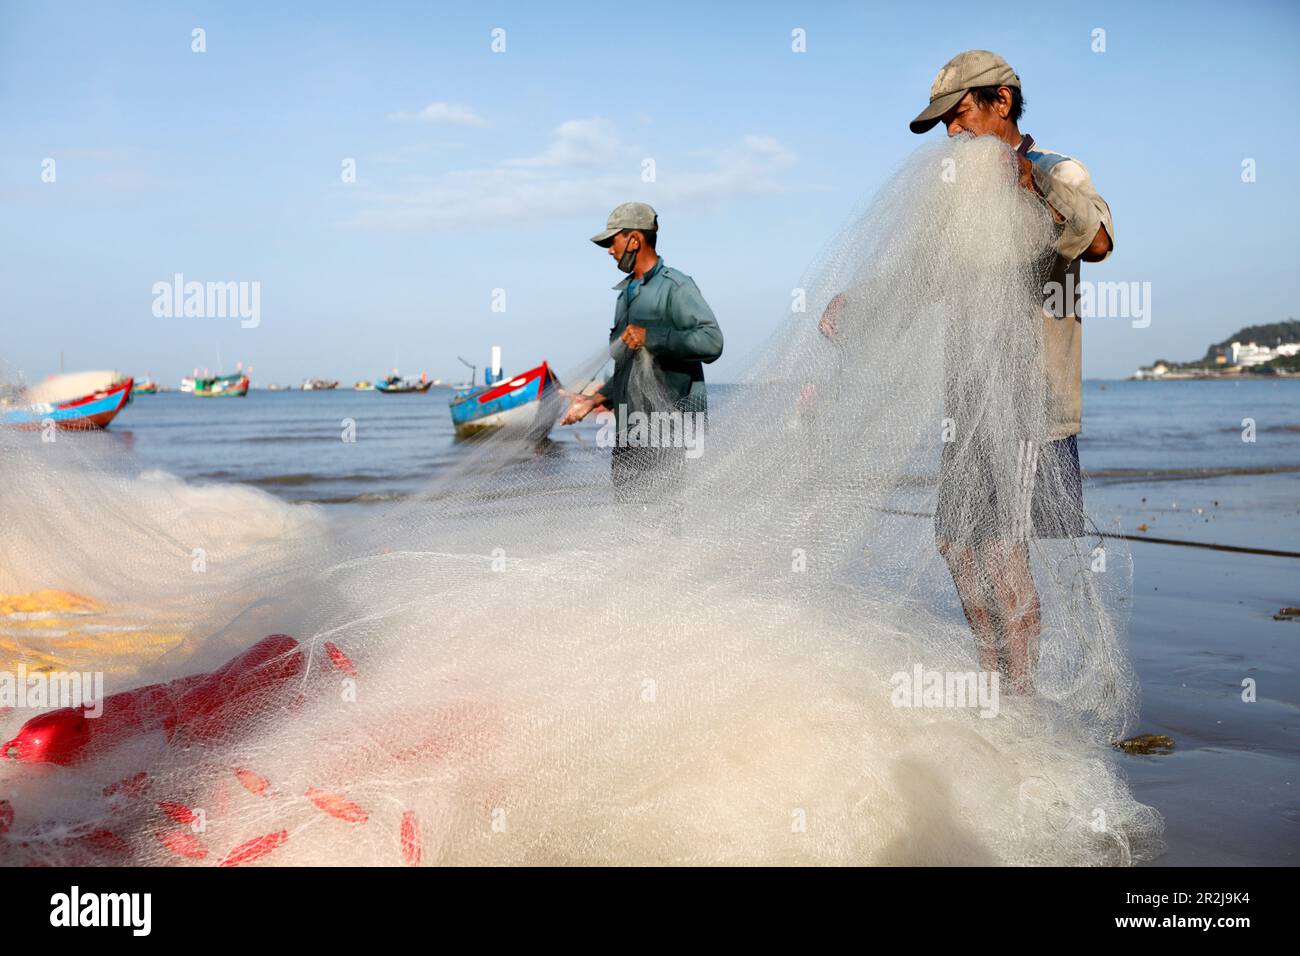 Fischer Instandsetzung Fischernetze, hängen Dua Bay, Vung Tau, Vietnam, Indochina, Südostasien, Asien Stockfoto